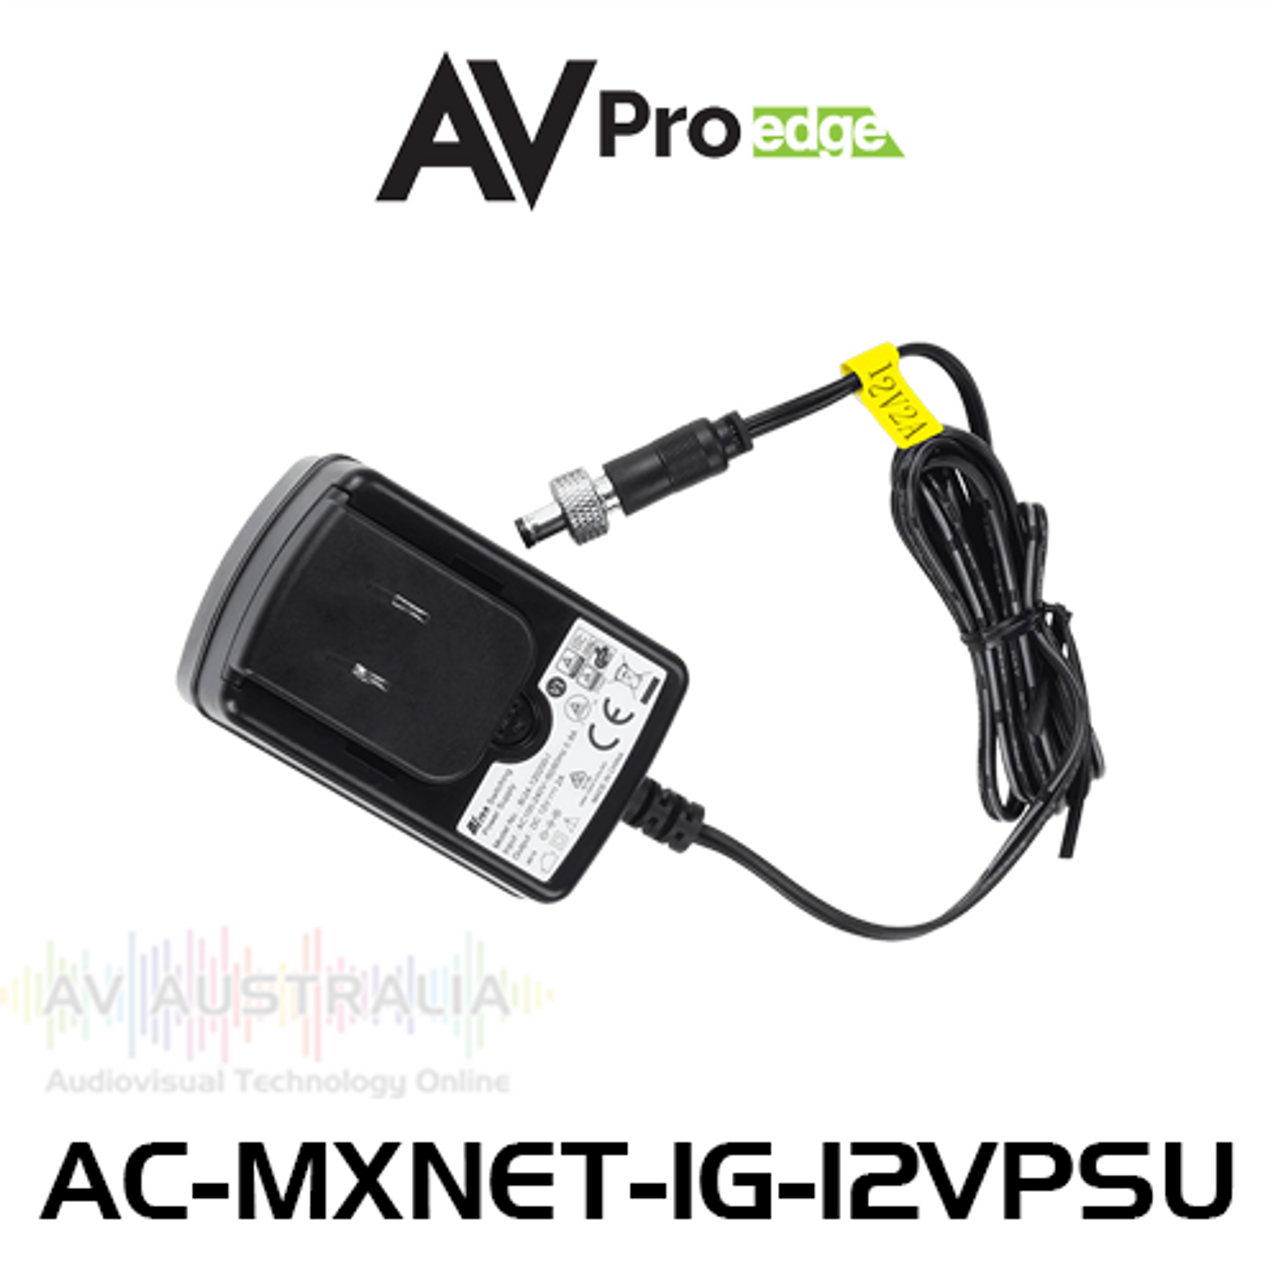 AVPro Edge MxNet 1G 12V 2A Power Supply For Encoder / Decoder